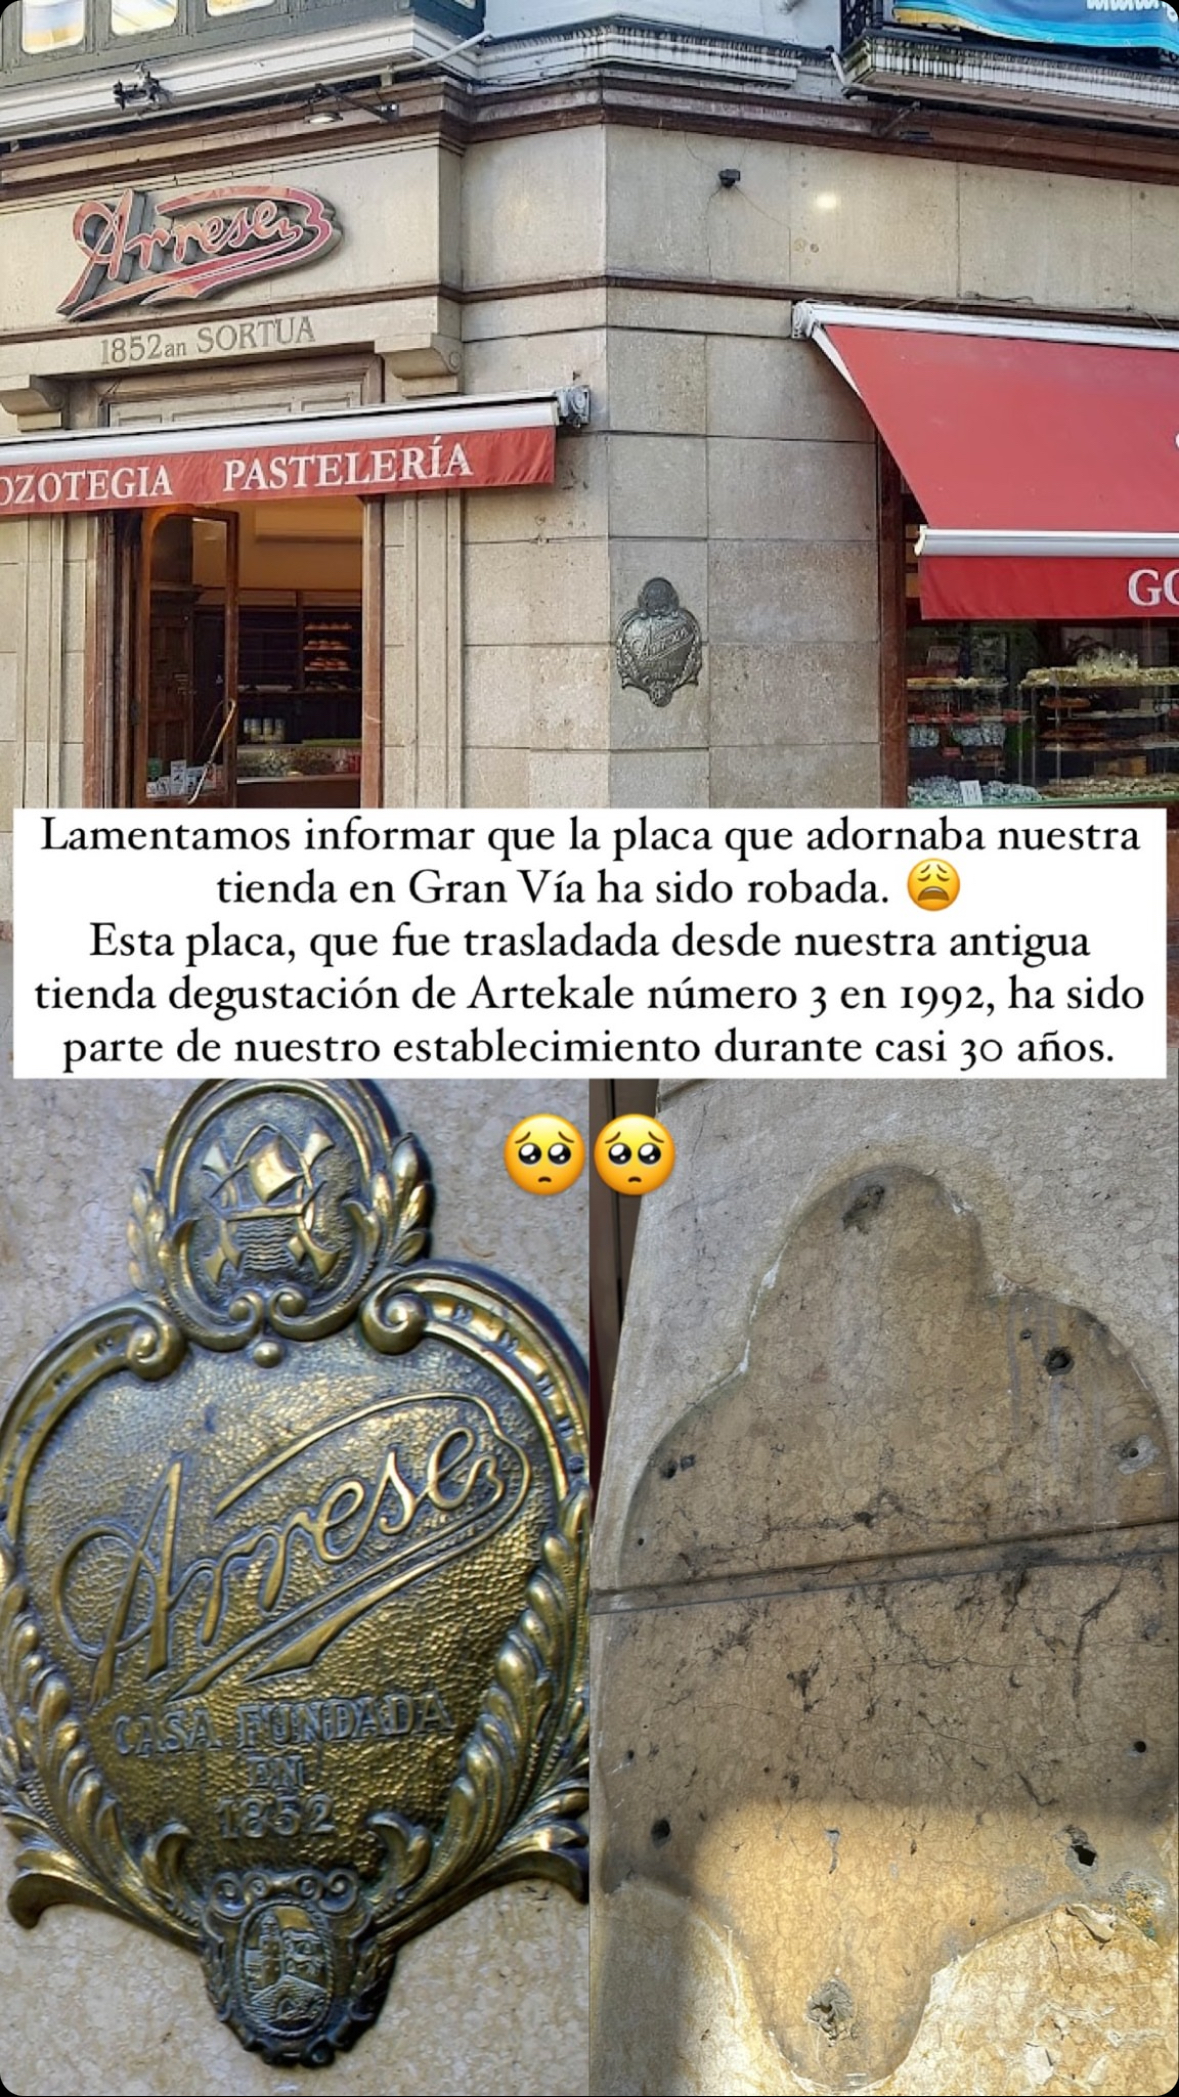 Robo de la placa de la pastelería Arrese de la Gran Vía de Bilbao. Instagram: @arresebilbao1852